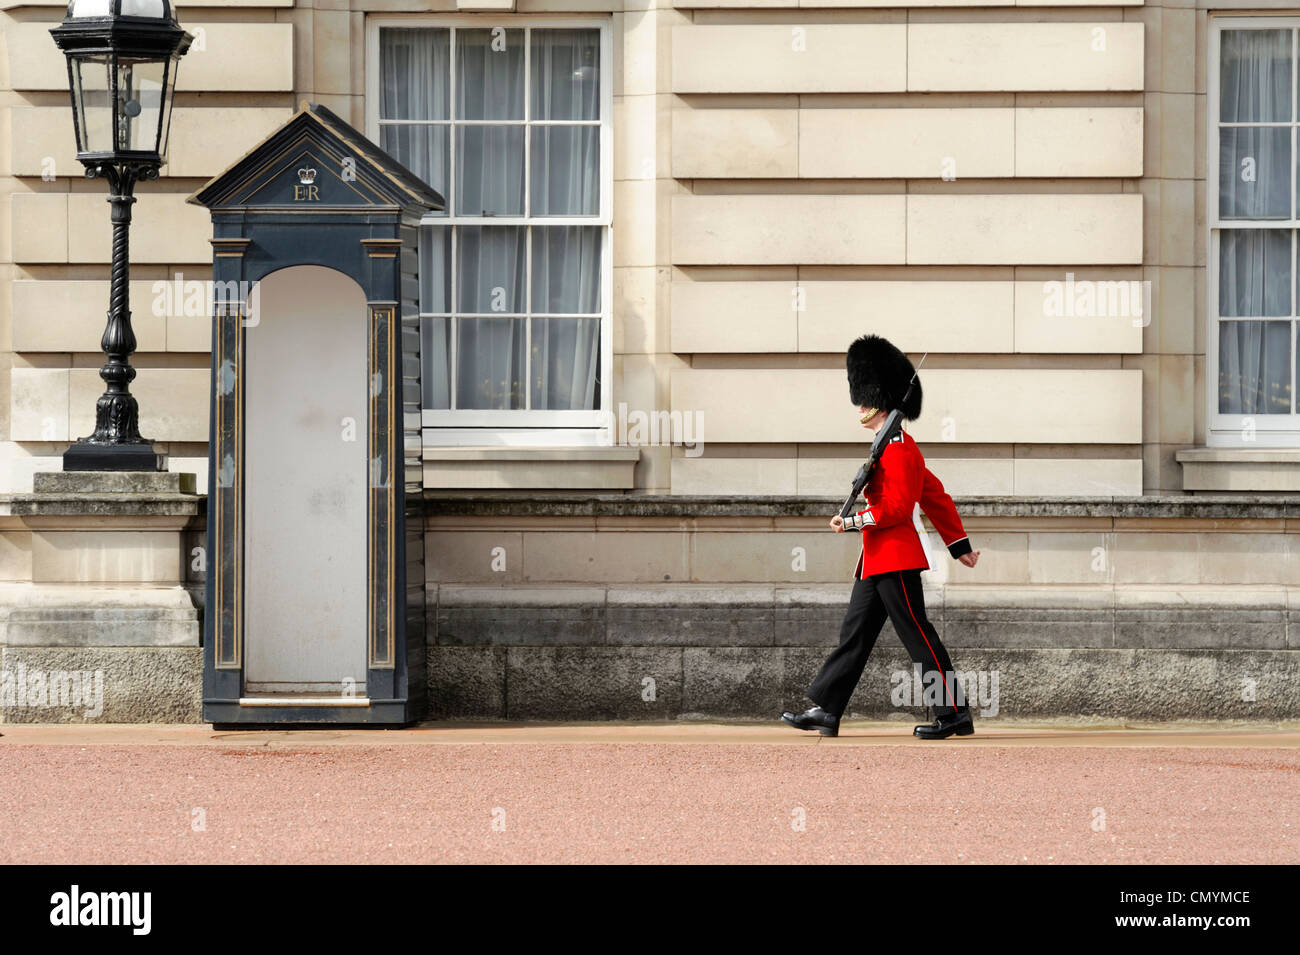 Vereinigtes Königreich, London, Buckingham Palace, englische Wache vor Buckingham Palace Stockfoto